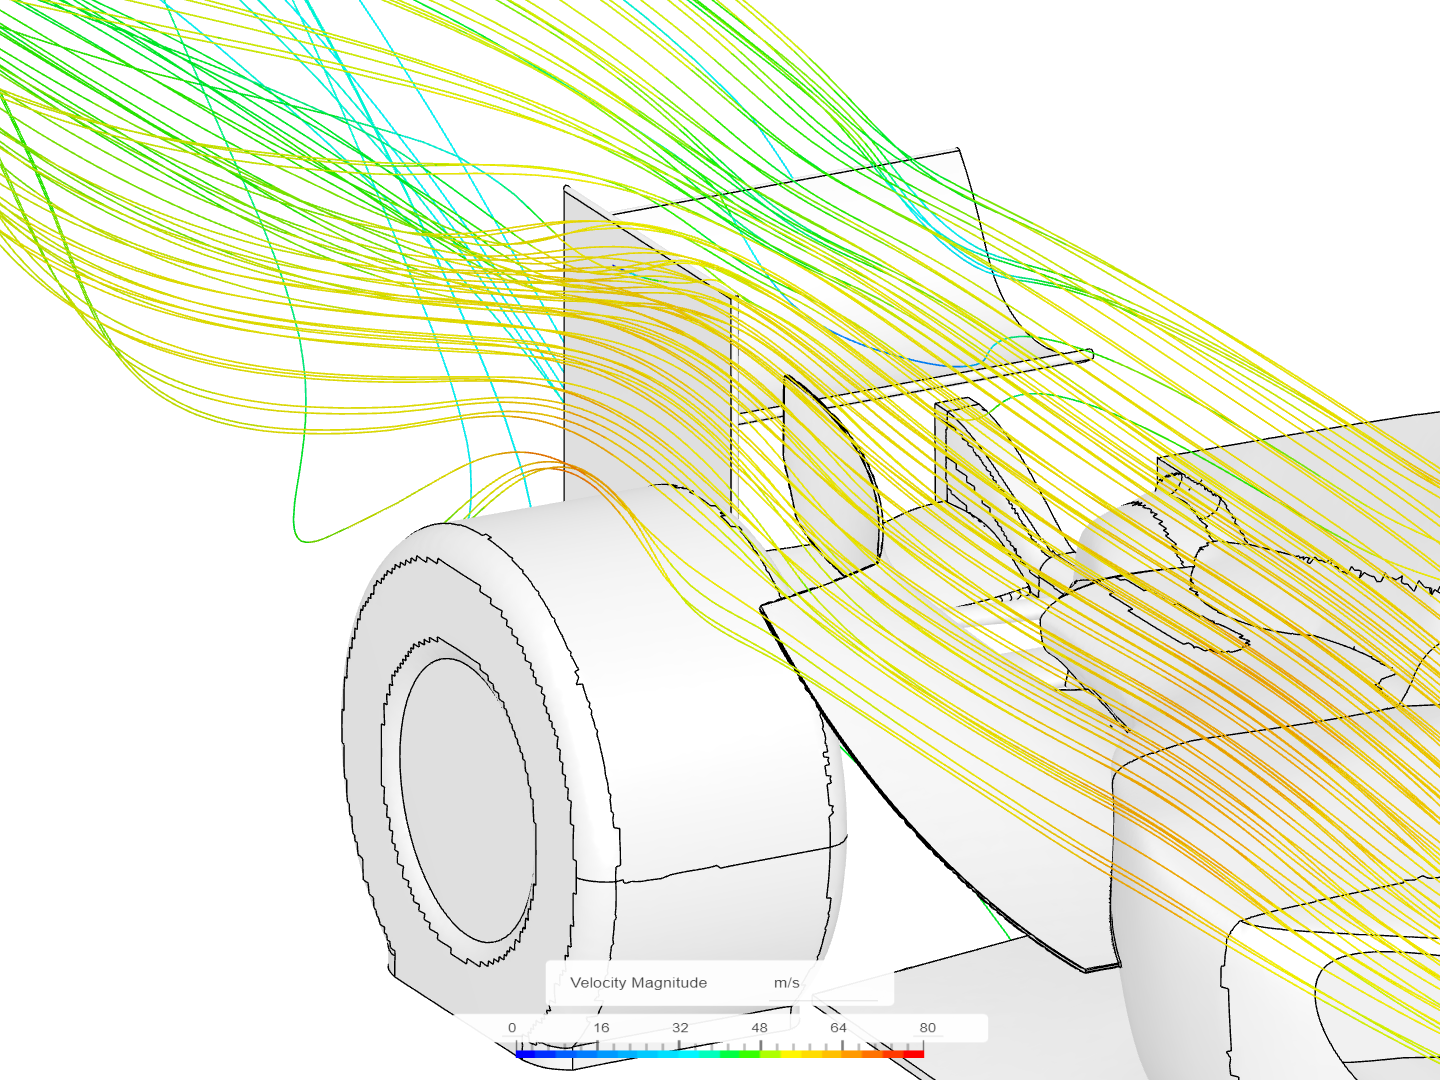 f1 car analysis image